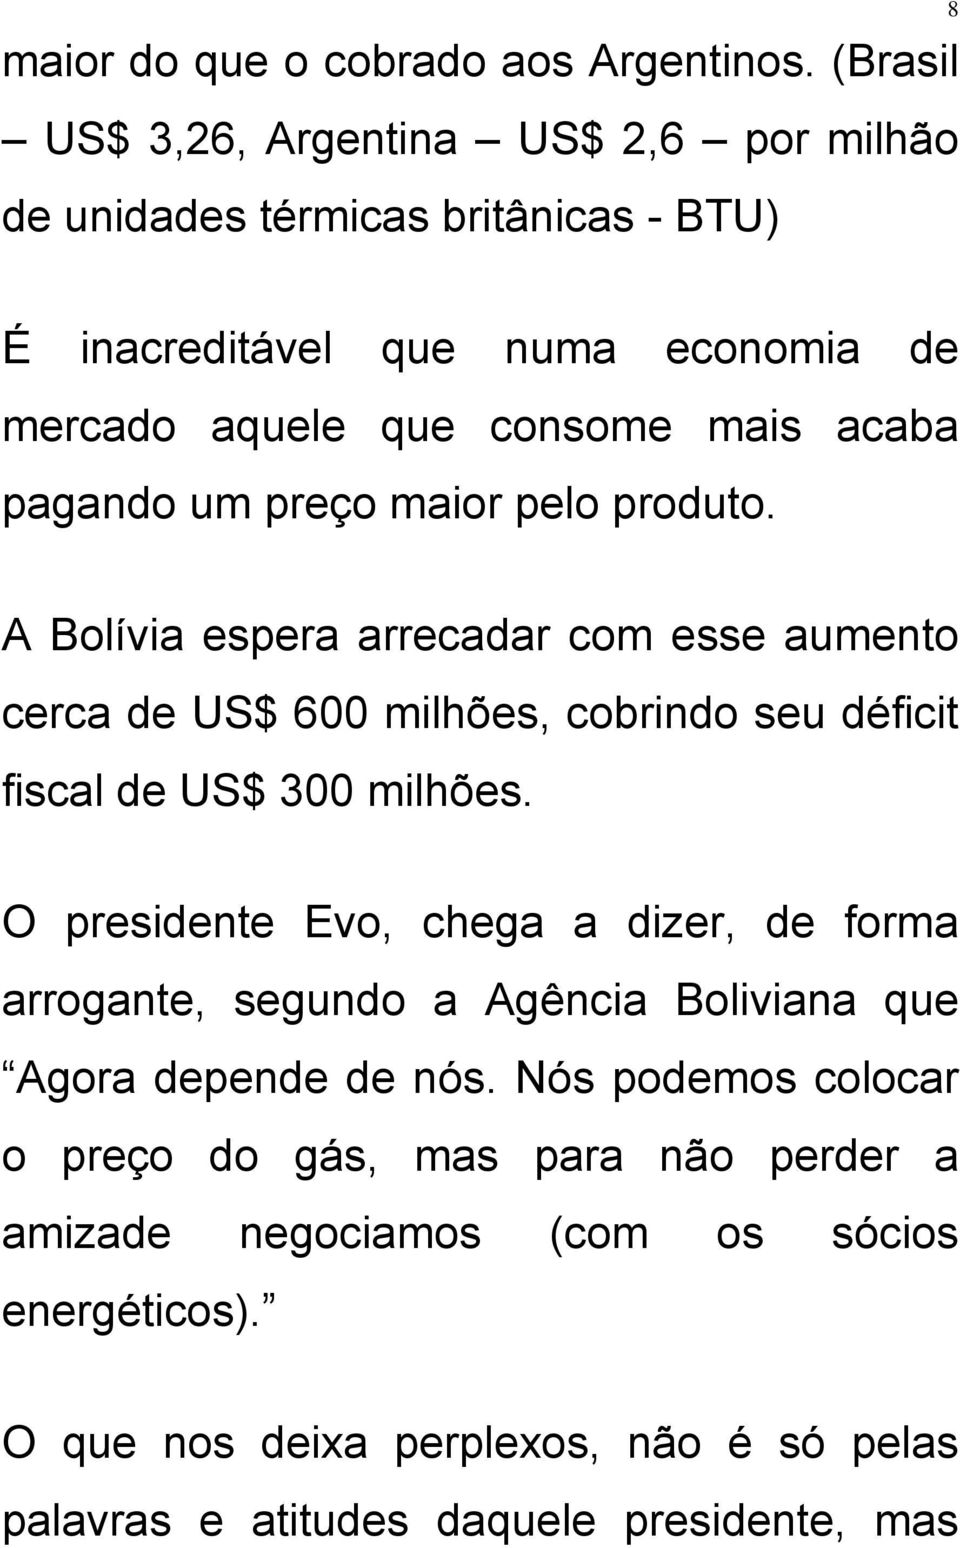 pagando um preço maior pelo produto. A Bolívia espera arrecadar com esse aumento cerca de US$ 600 milhões, cobrindo seu déficit fiscal de US$ 300 milhões.